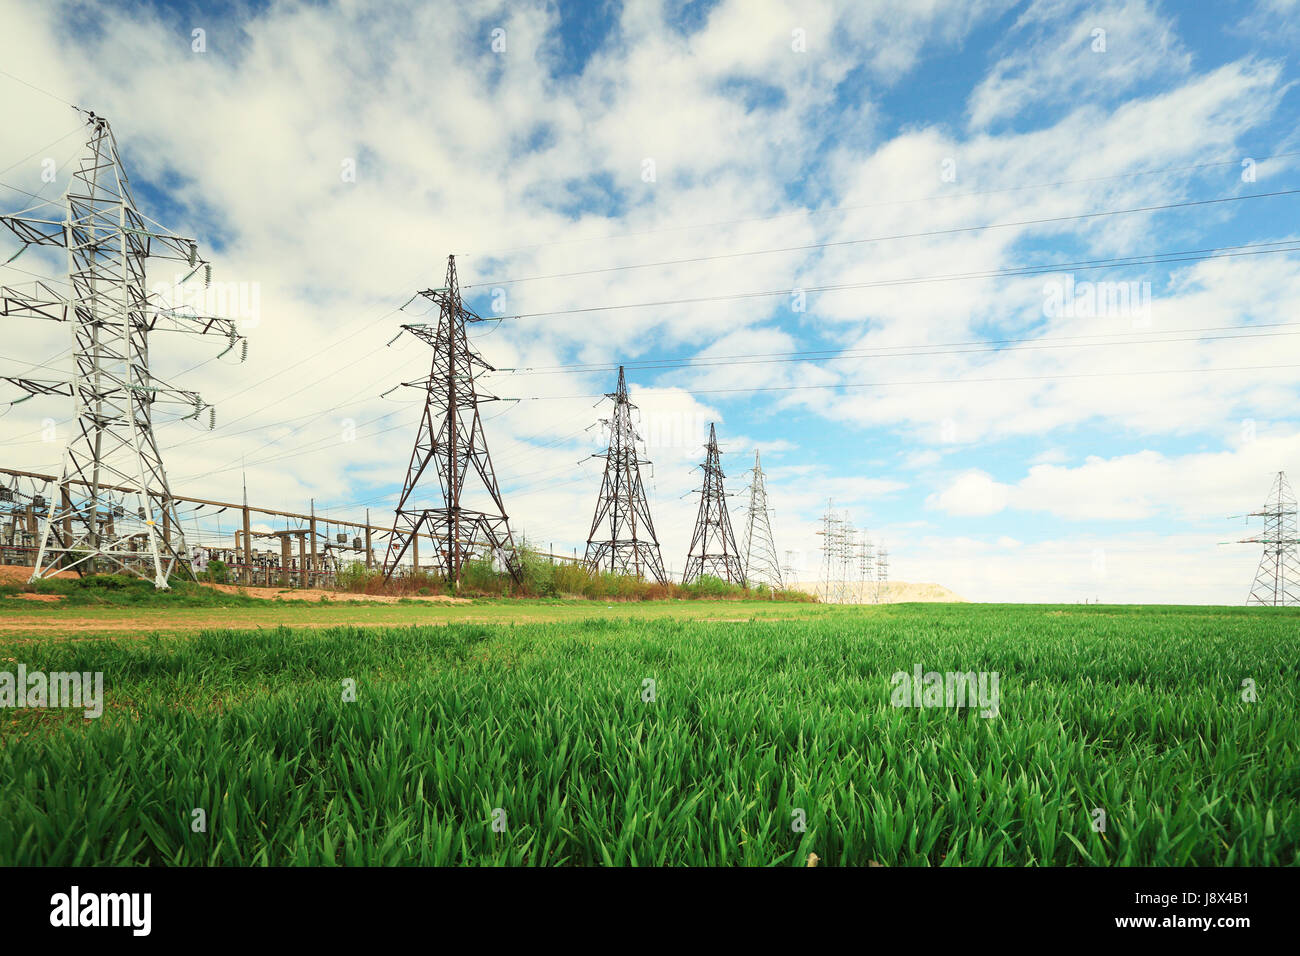 Gruppe von elektrischen Leitungen auf Sommer Himmelshintergrund. Elektrische Türme im grünen Feld an sonnigen Tag Stockfoto